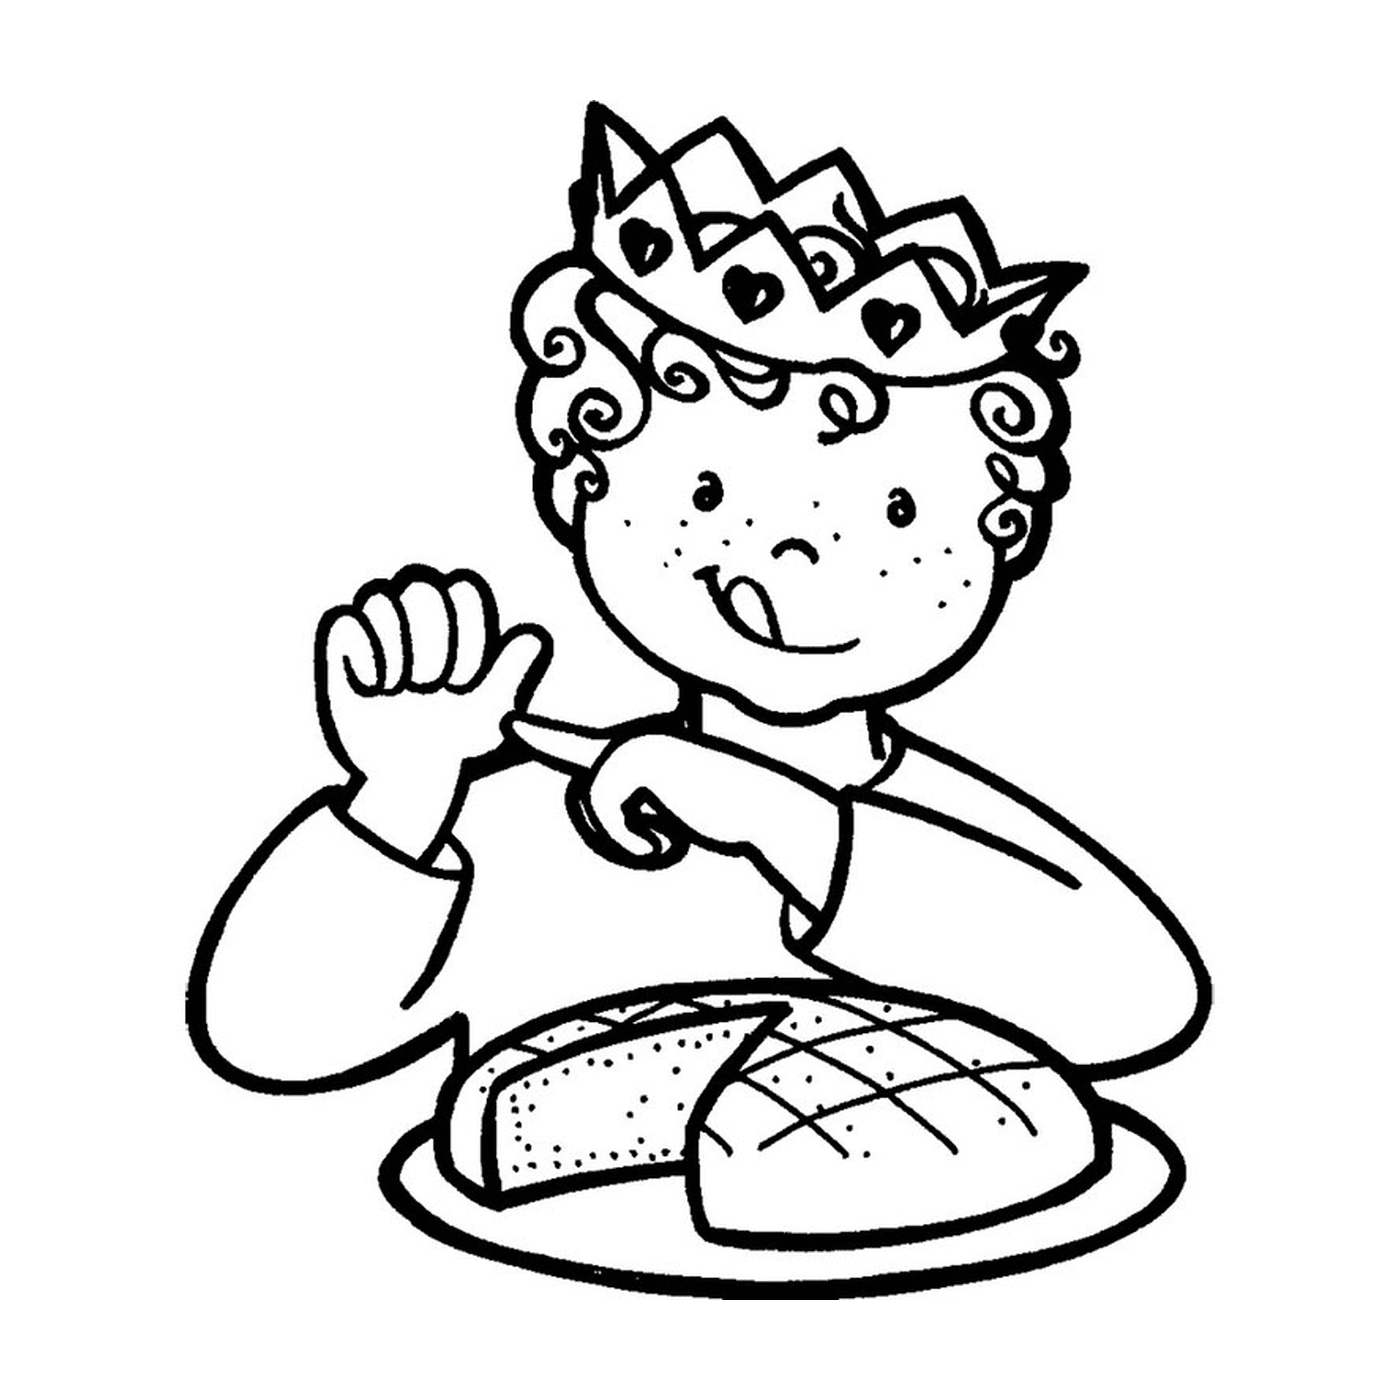  一个孩子用一个国王蛋糕 来庆祝顿悟 